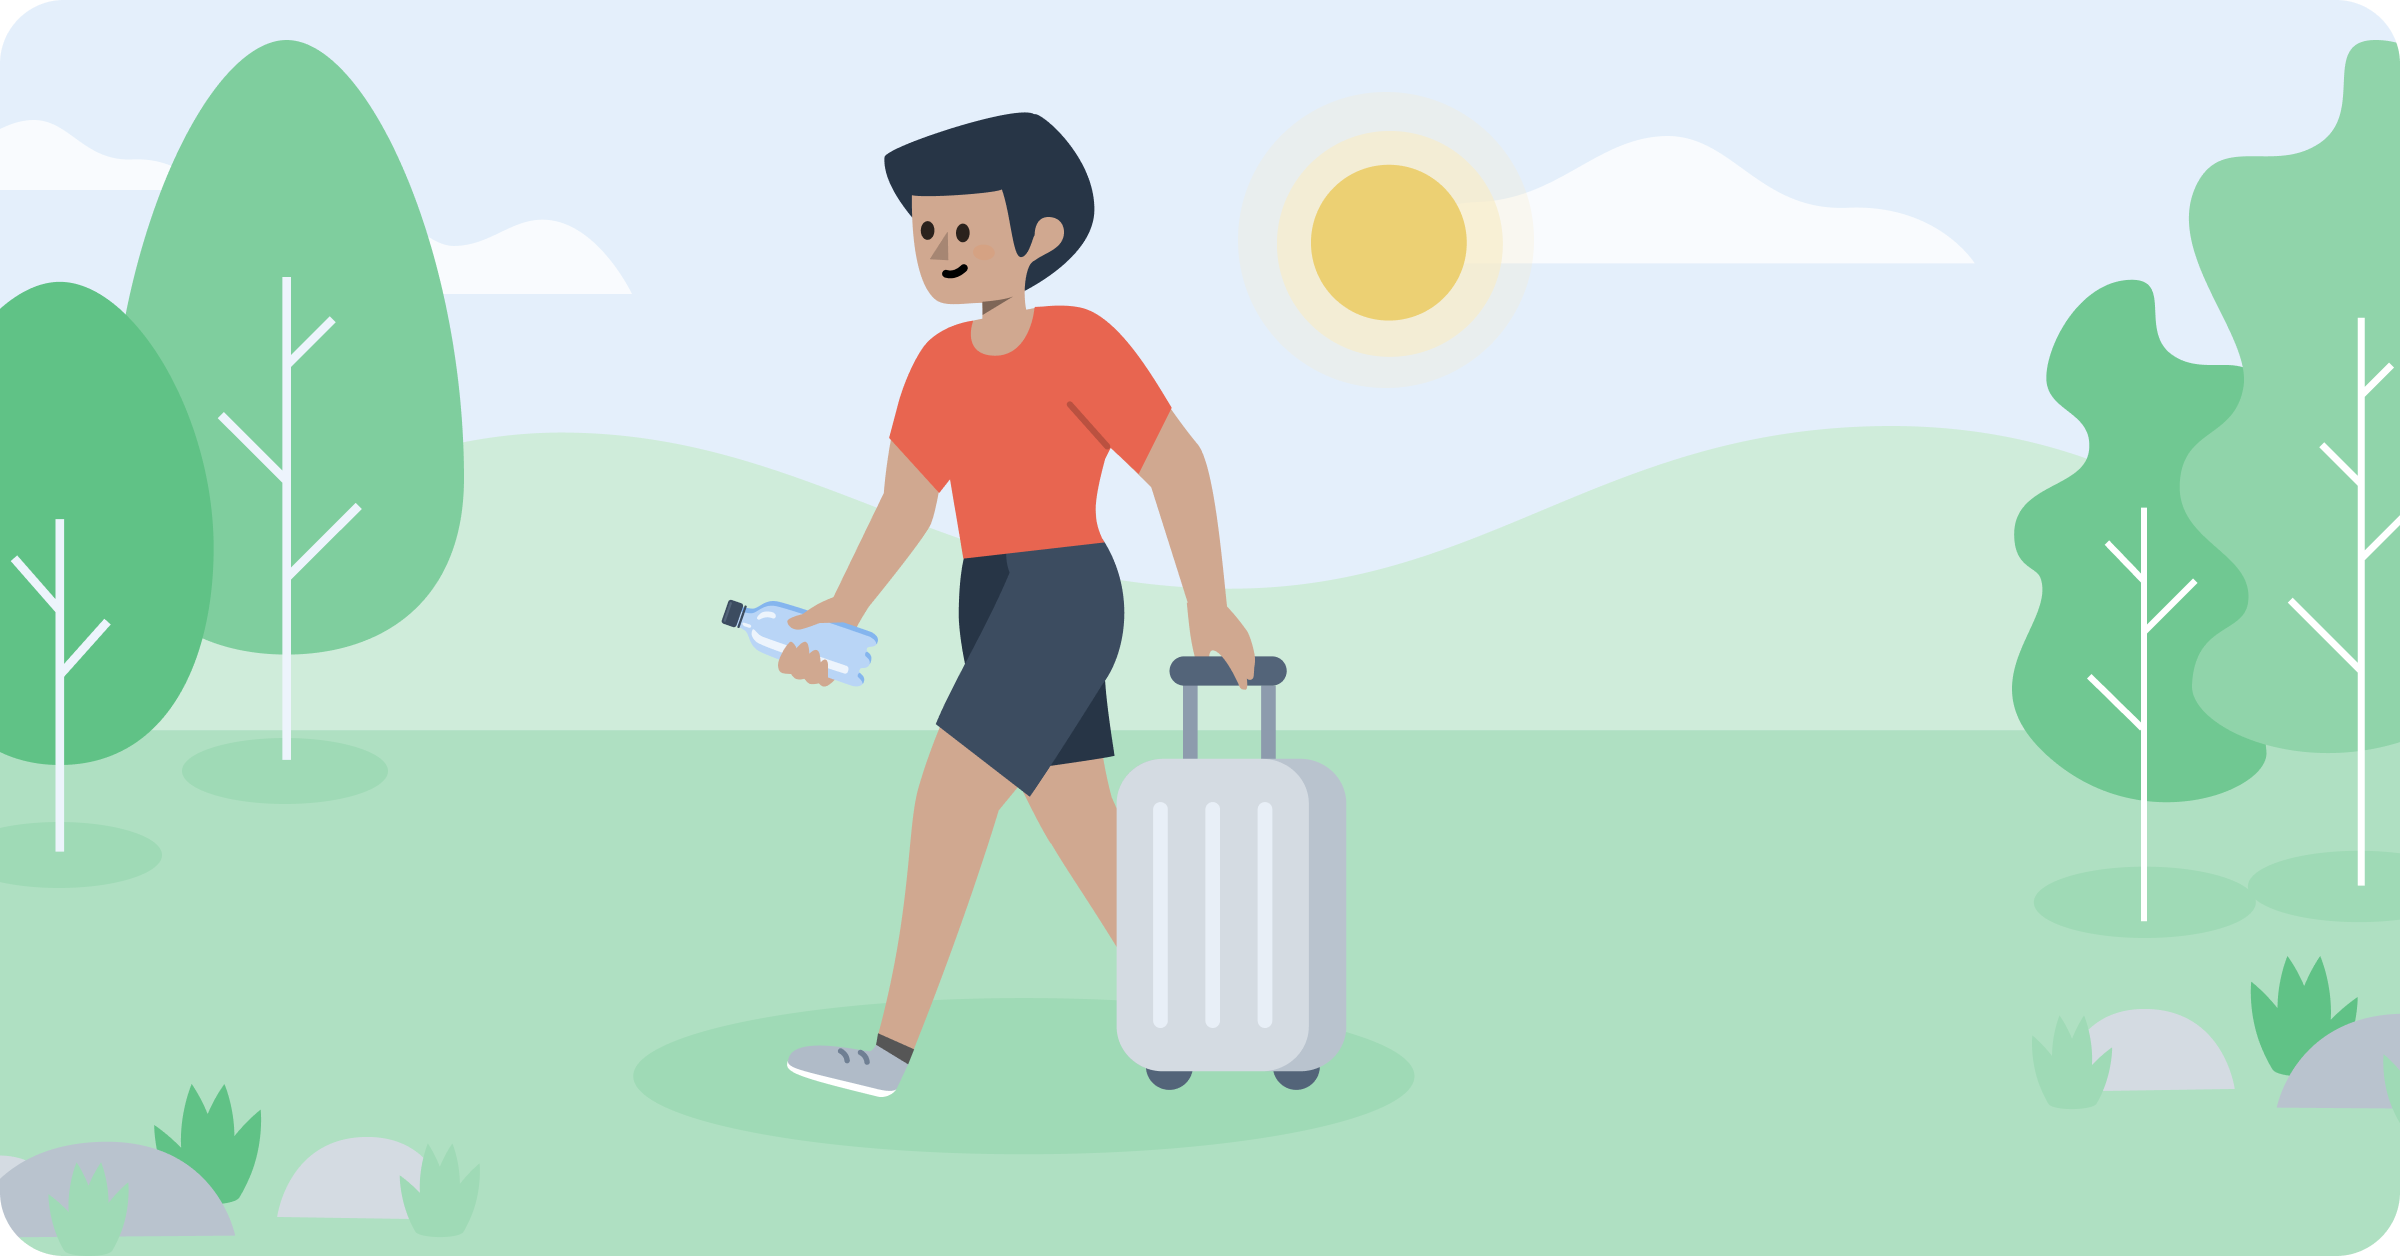 Sommarsäsongen kan vara både skön och utmanande om man lider av artros. Här har vi samlat praktiska tips för att resa och semestra med artros och vad du kan tänka på.